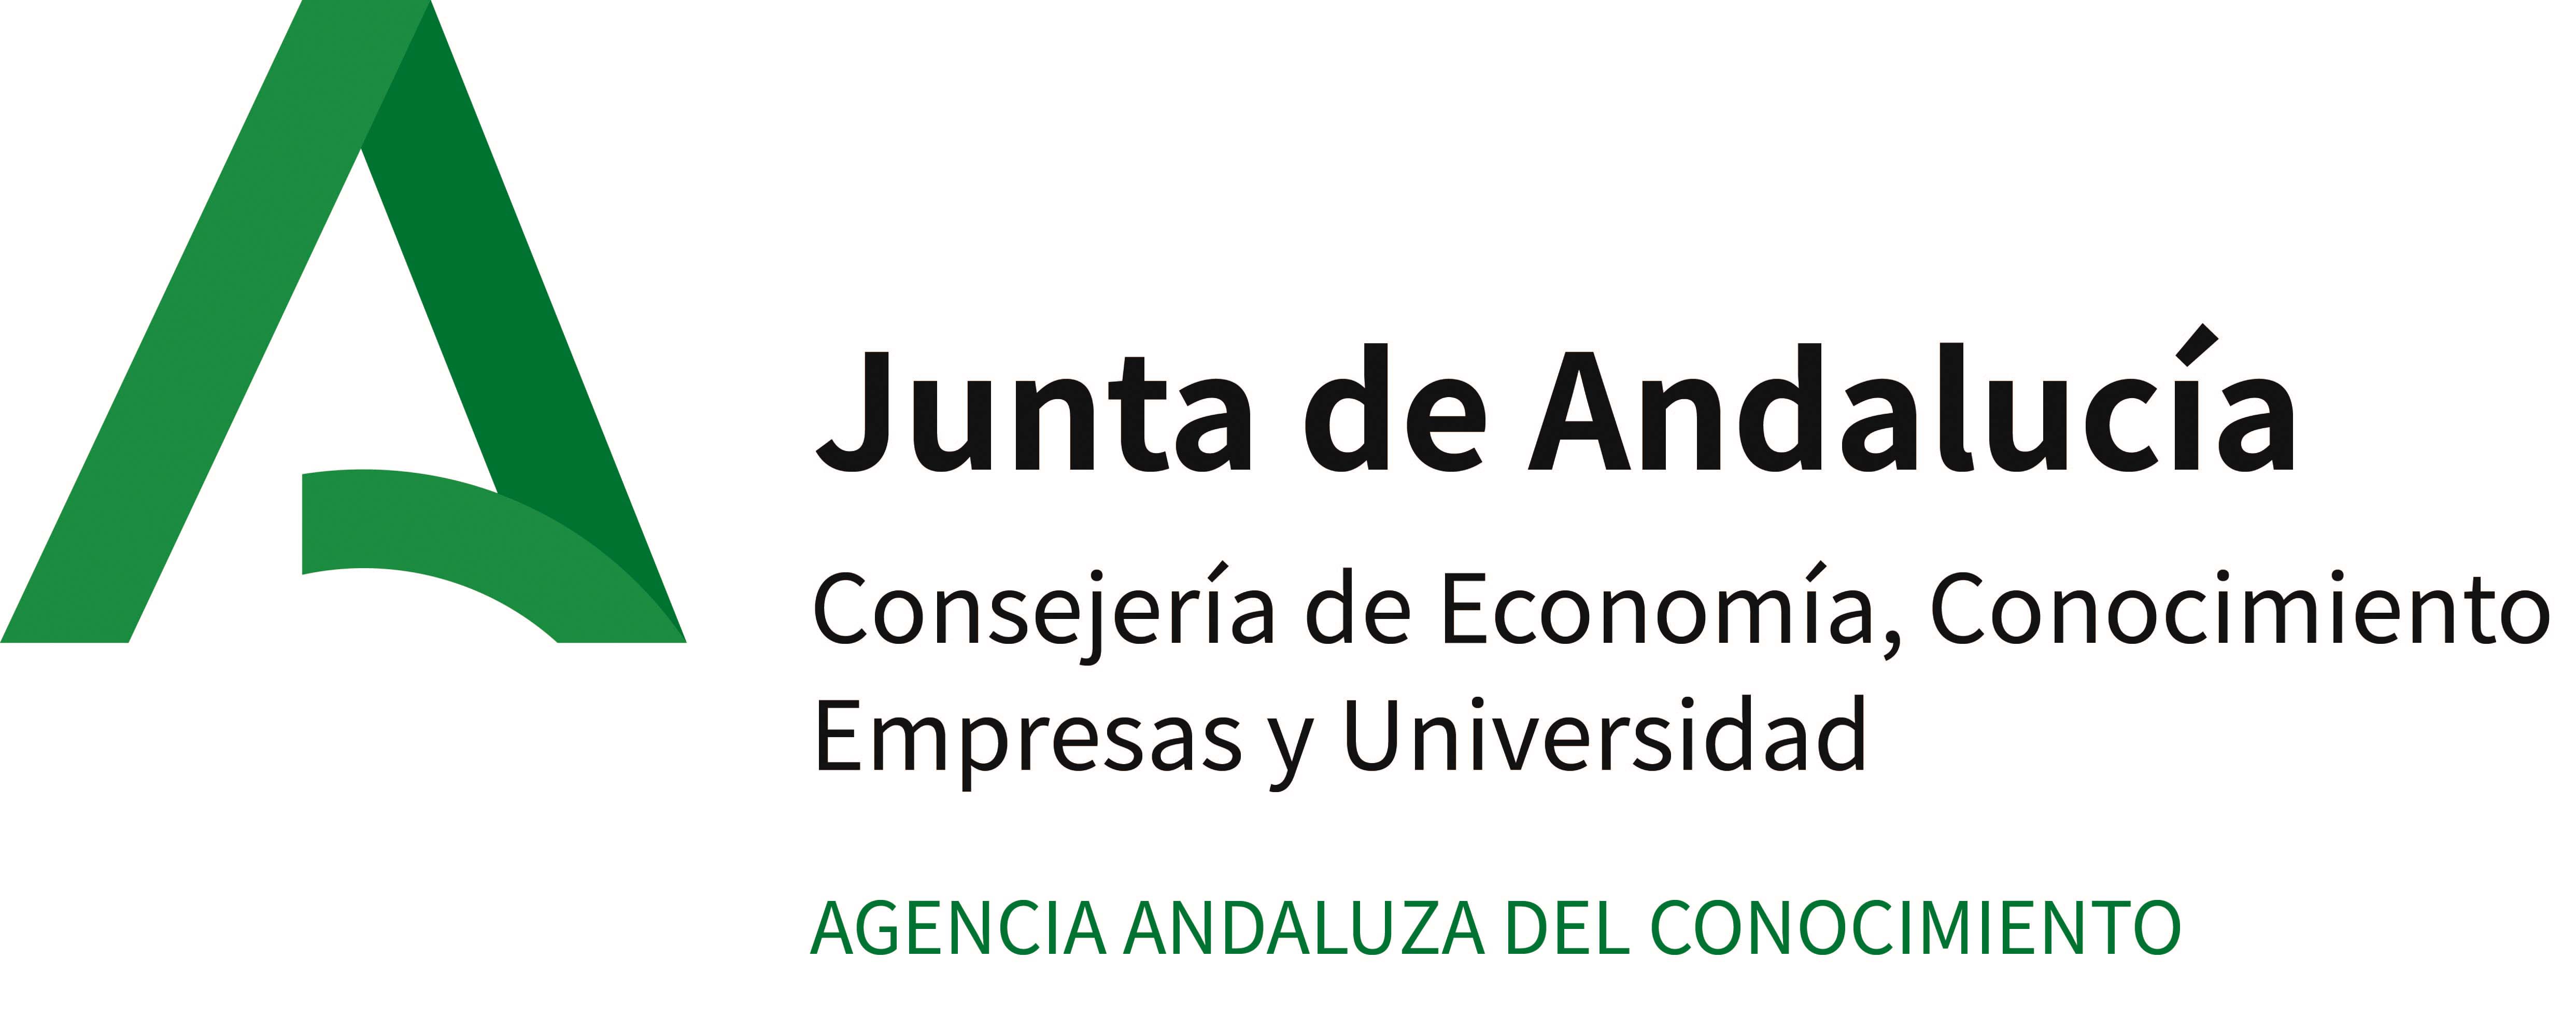 Agencia Andaluza del Conocimiento - AAC